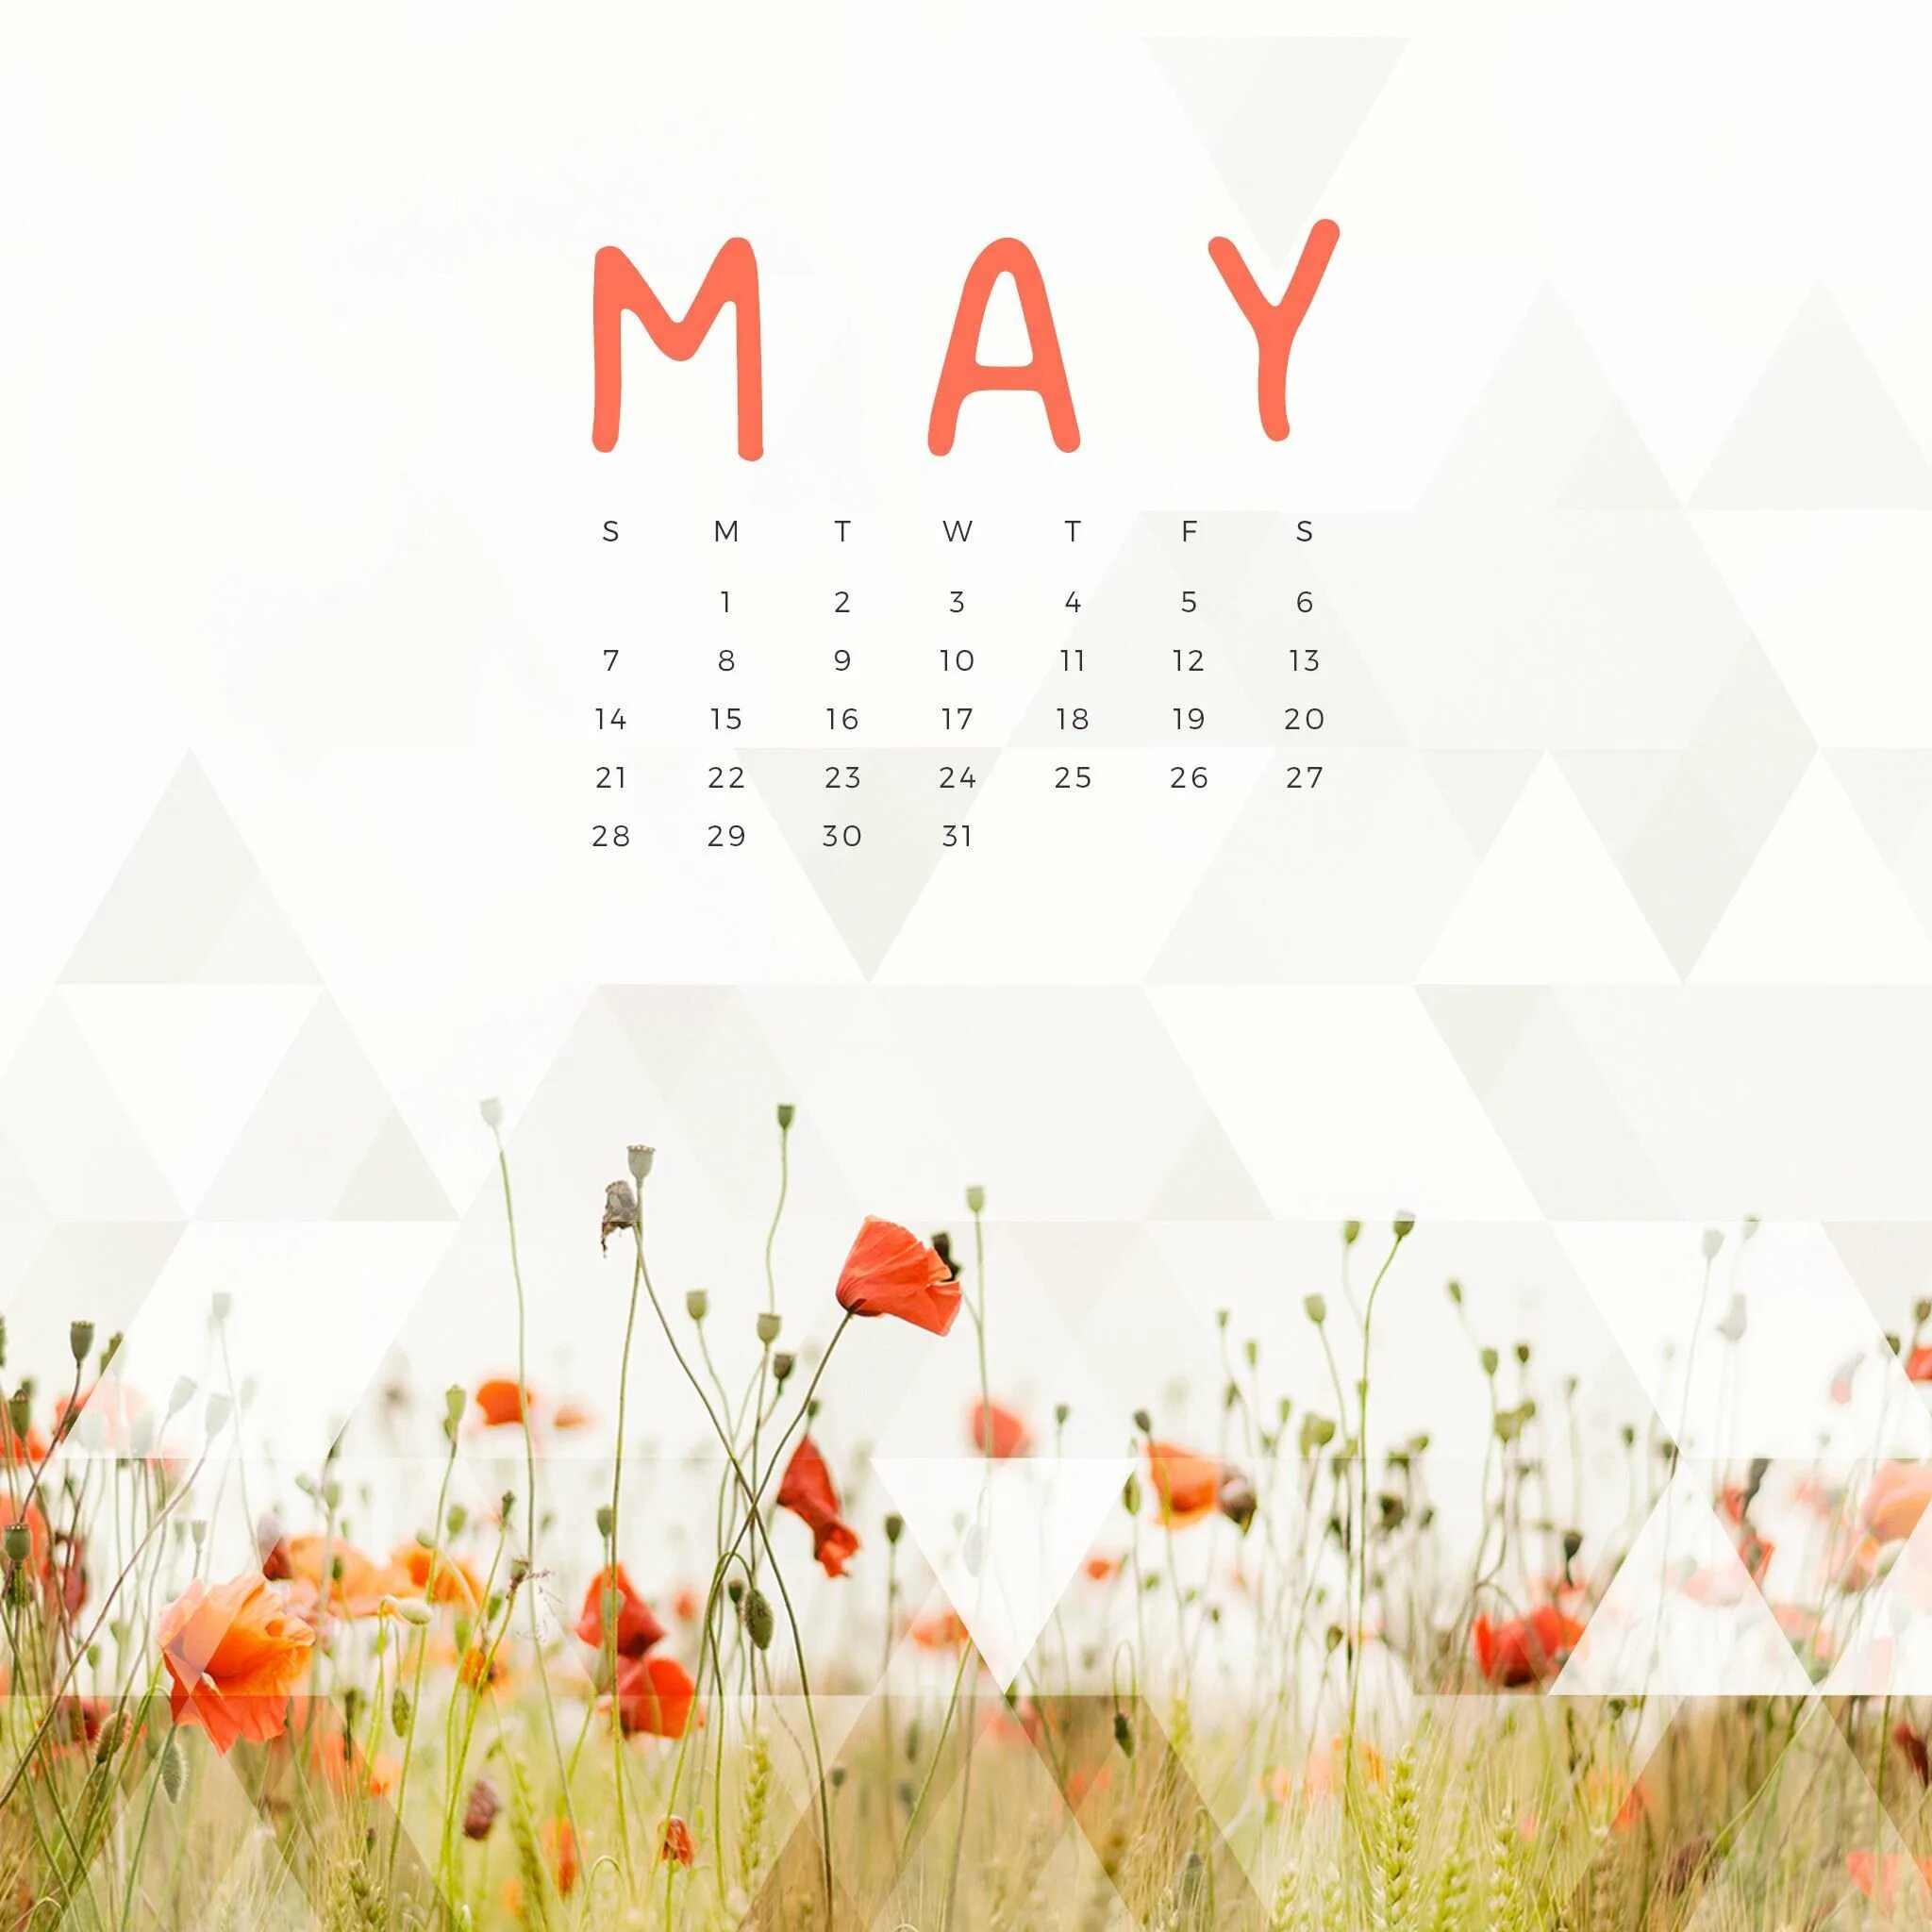 Обои на телефон с календарем. Календарь май. Красивый календарь. Календарь иллюстрация. Обои с календарем на месяц.